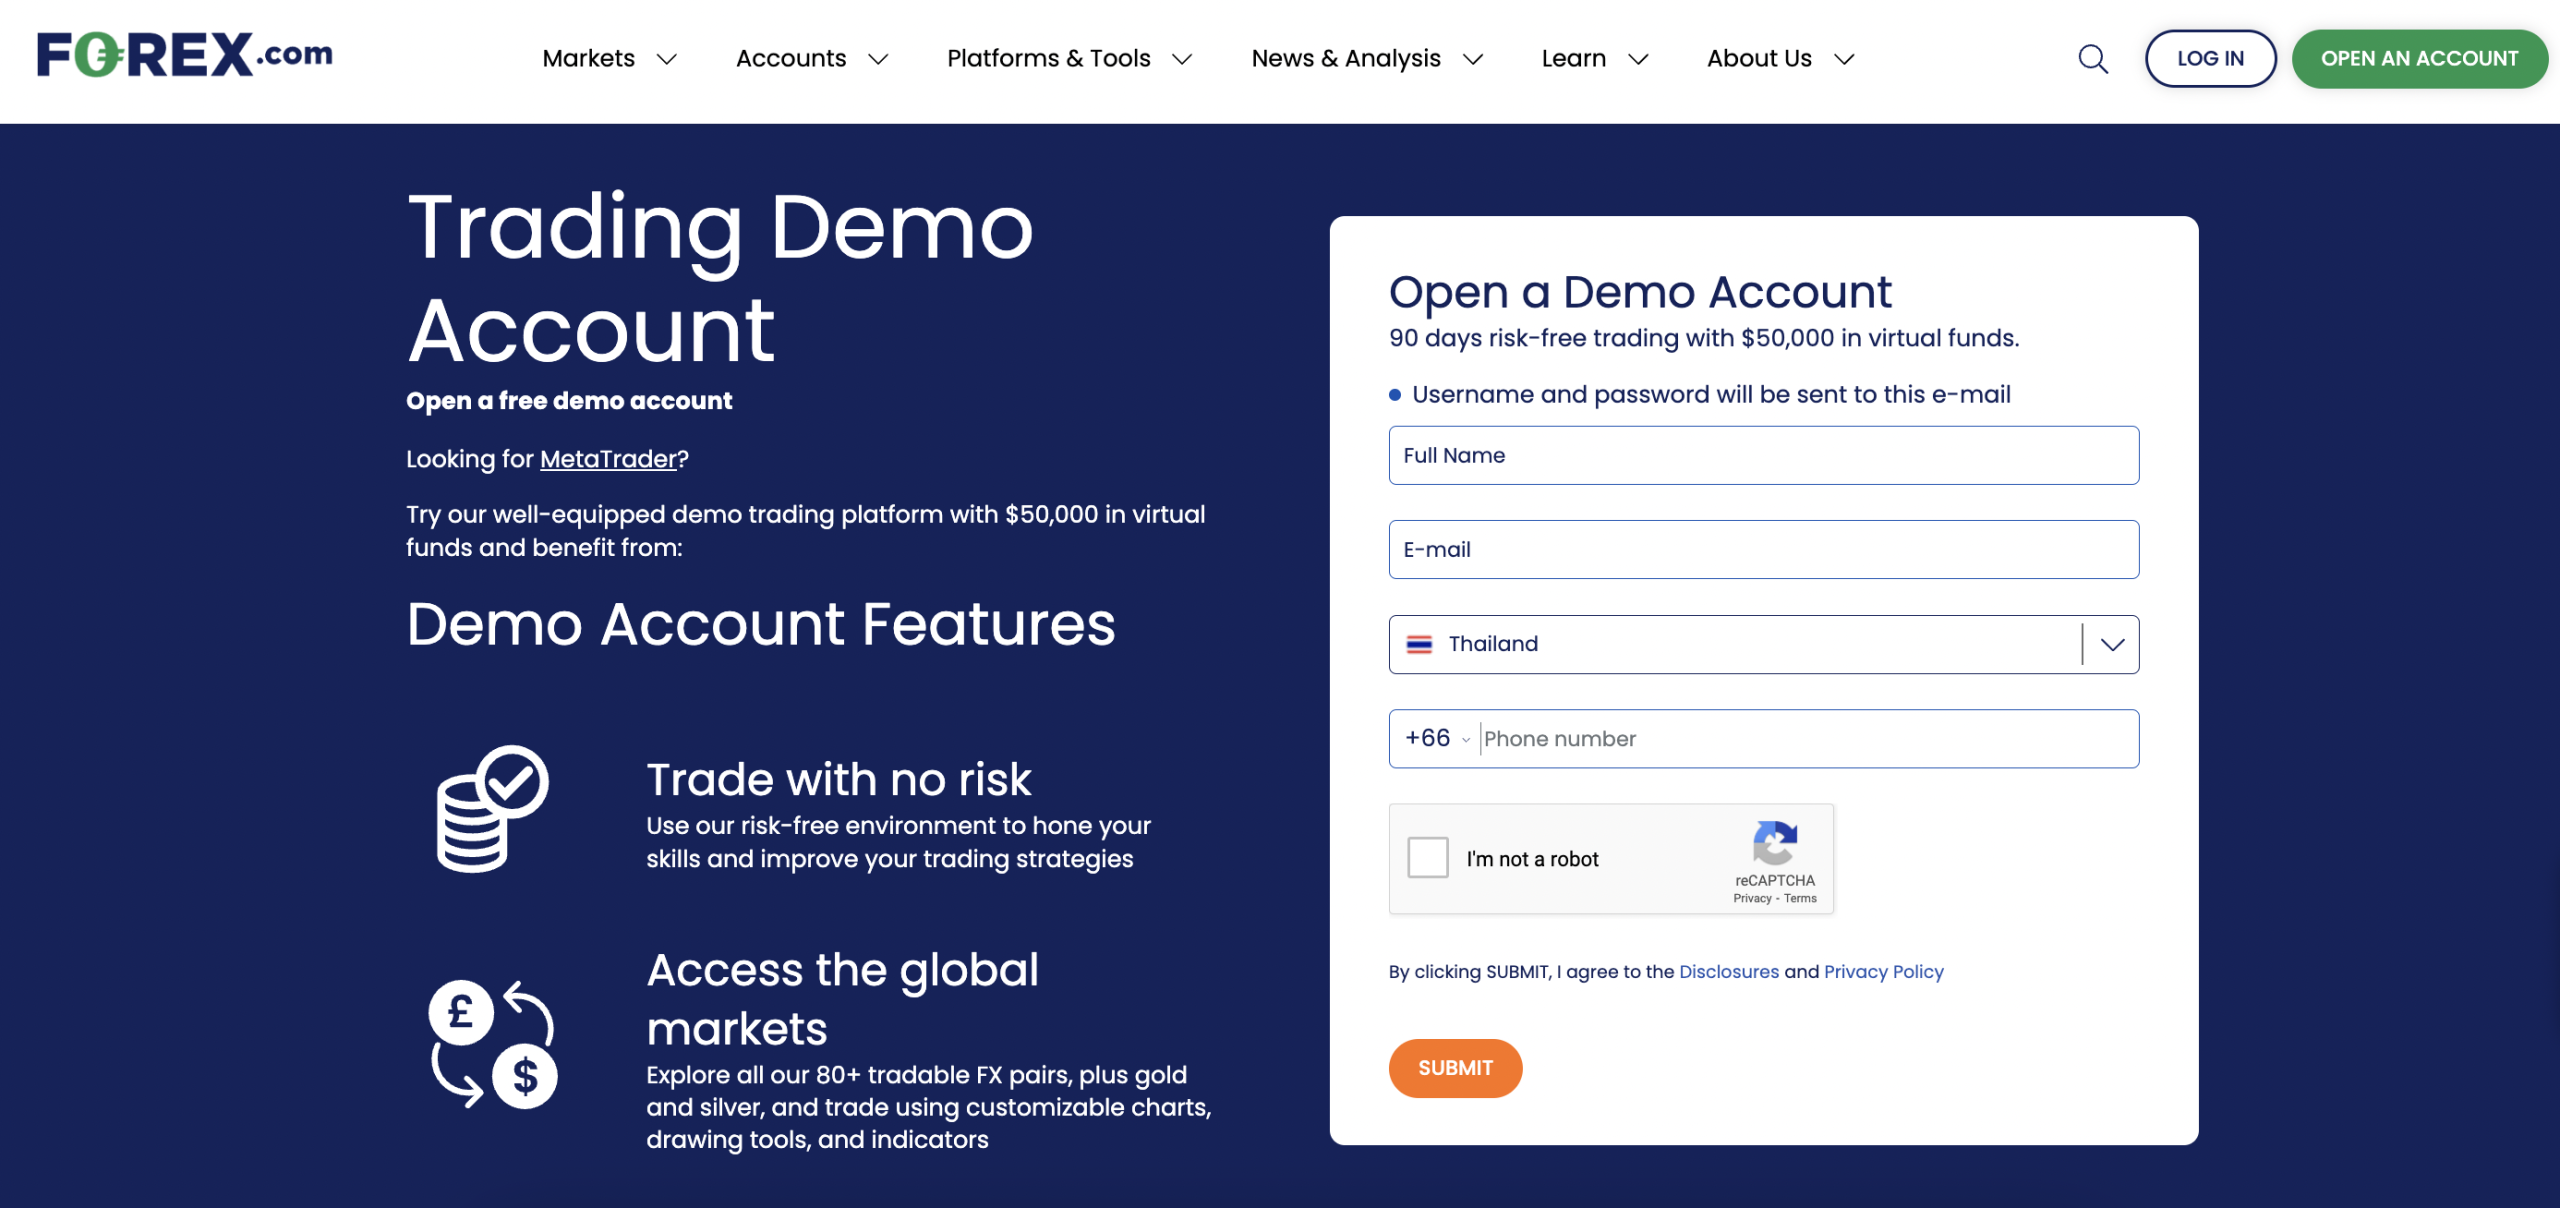 Forex.com demo account